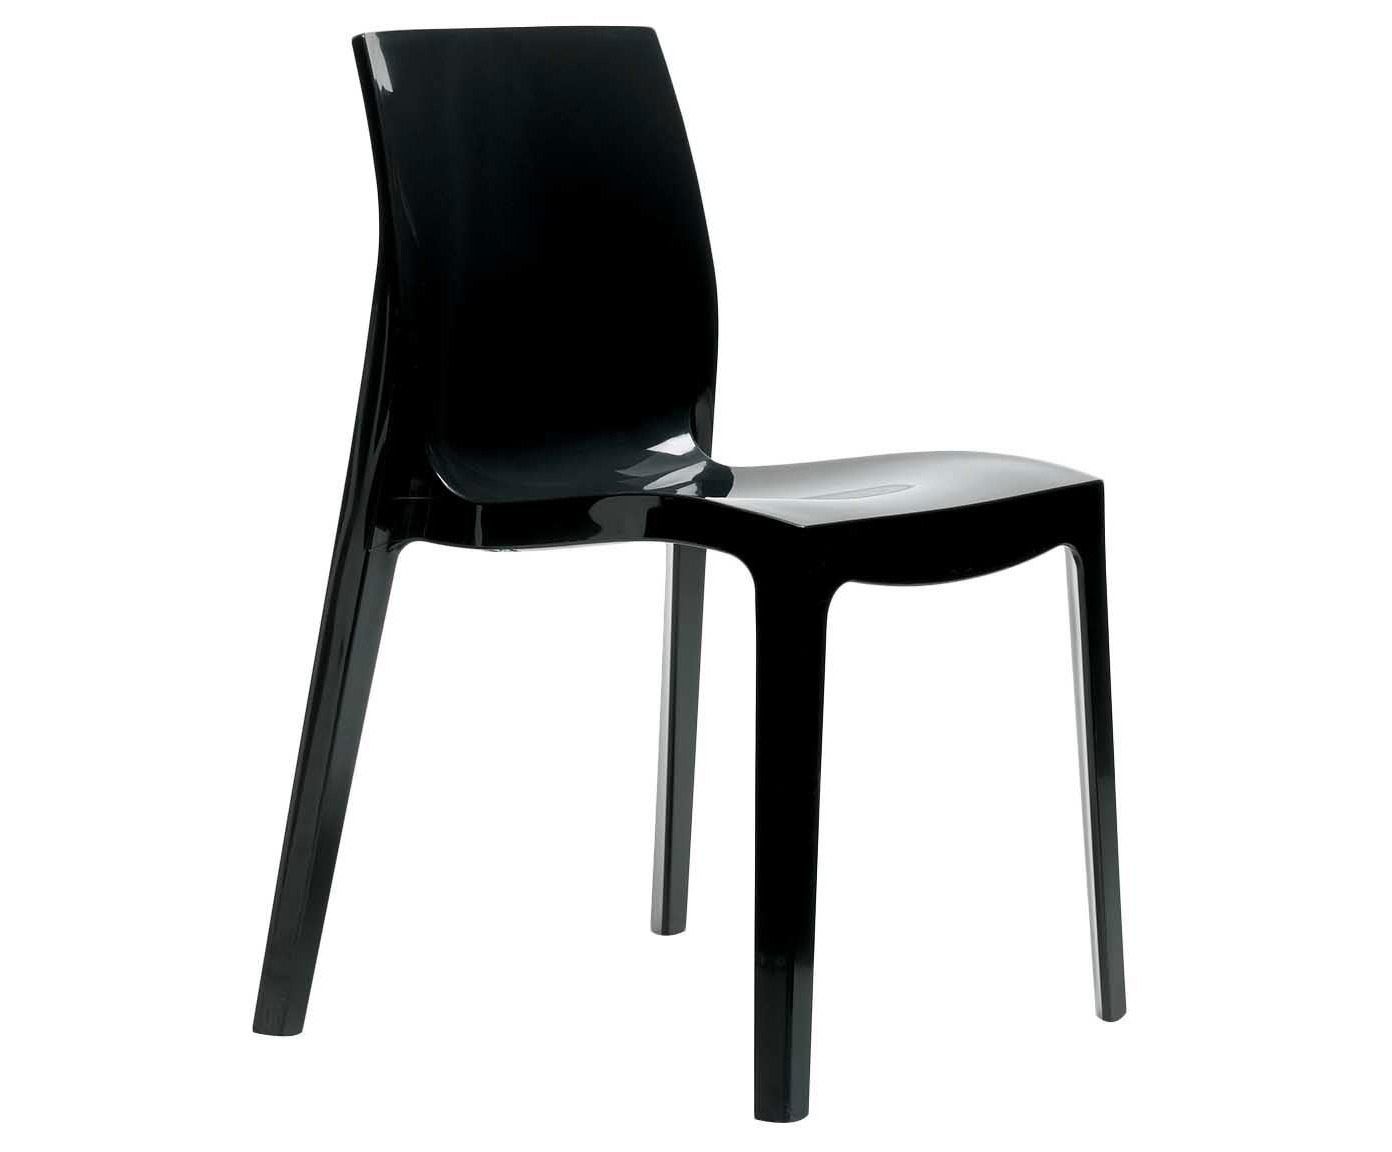 Cadeira mademon nuit - 52cm | Westwing.com.br